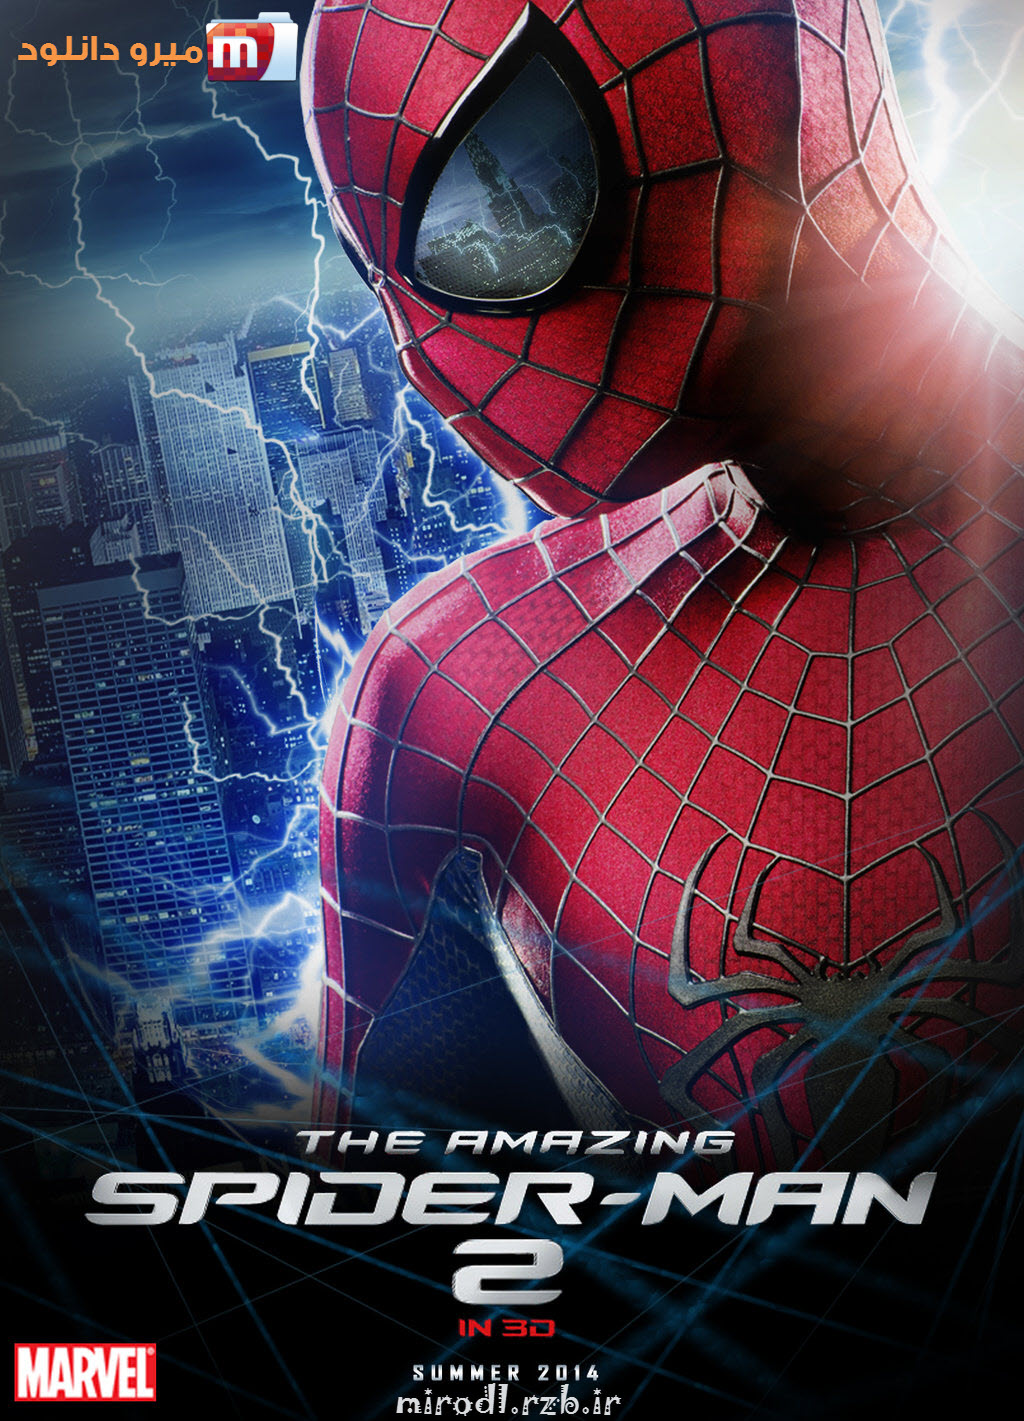  دانلود فیلم سینمایی فوق العاده دیدنی مرد عنکبوتی شگفت انگیز 2 - The Amazing Spider- Man 2